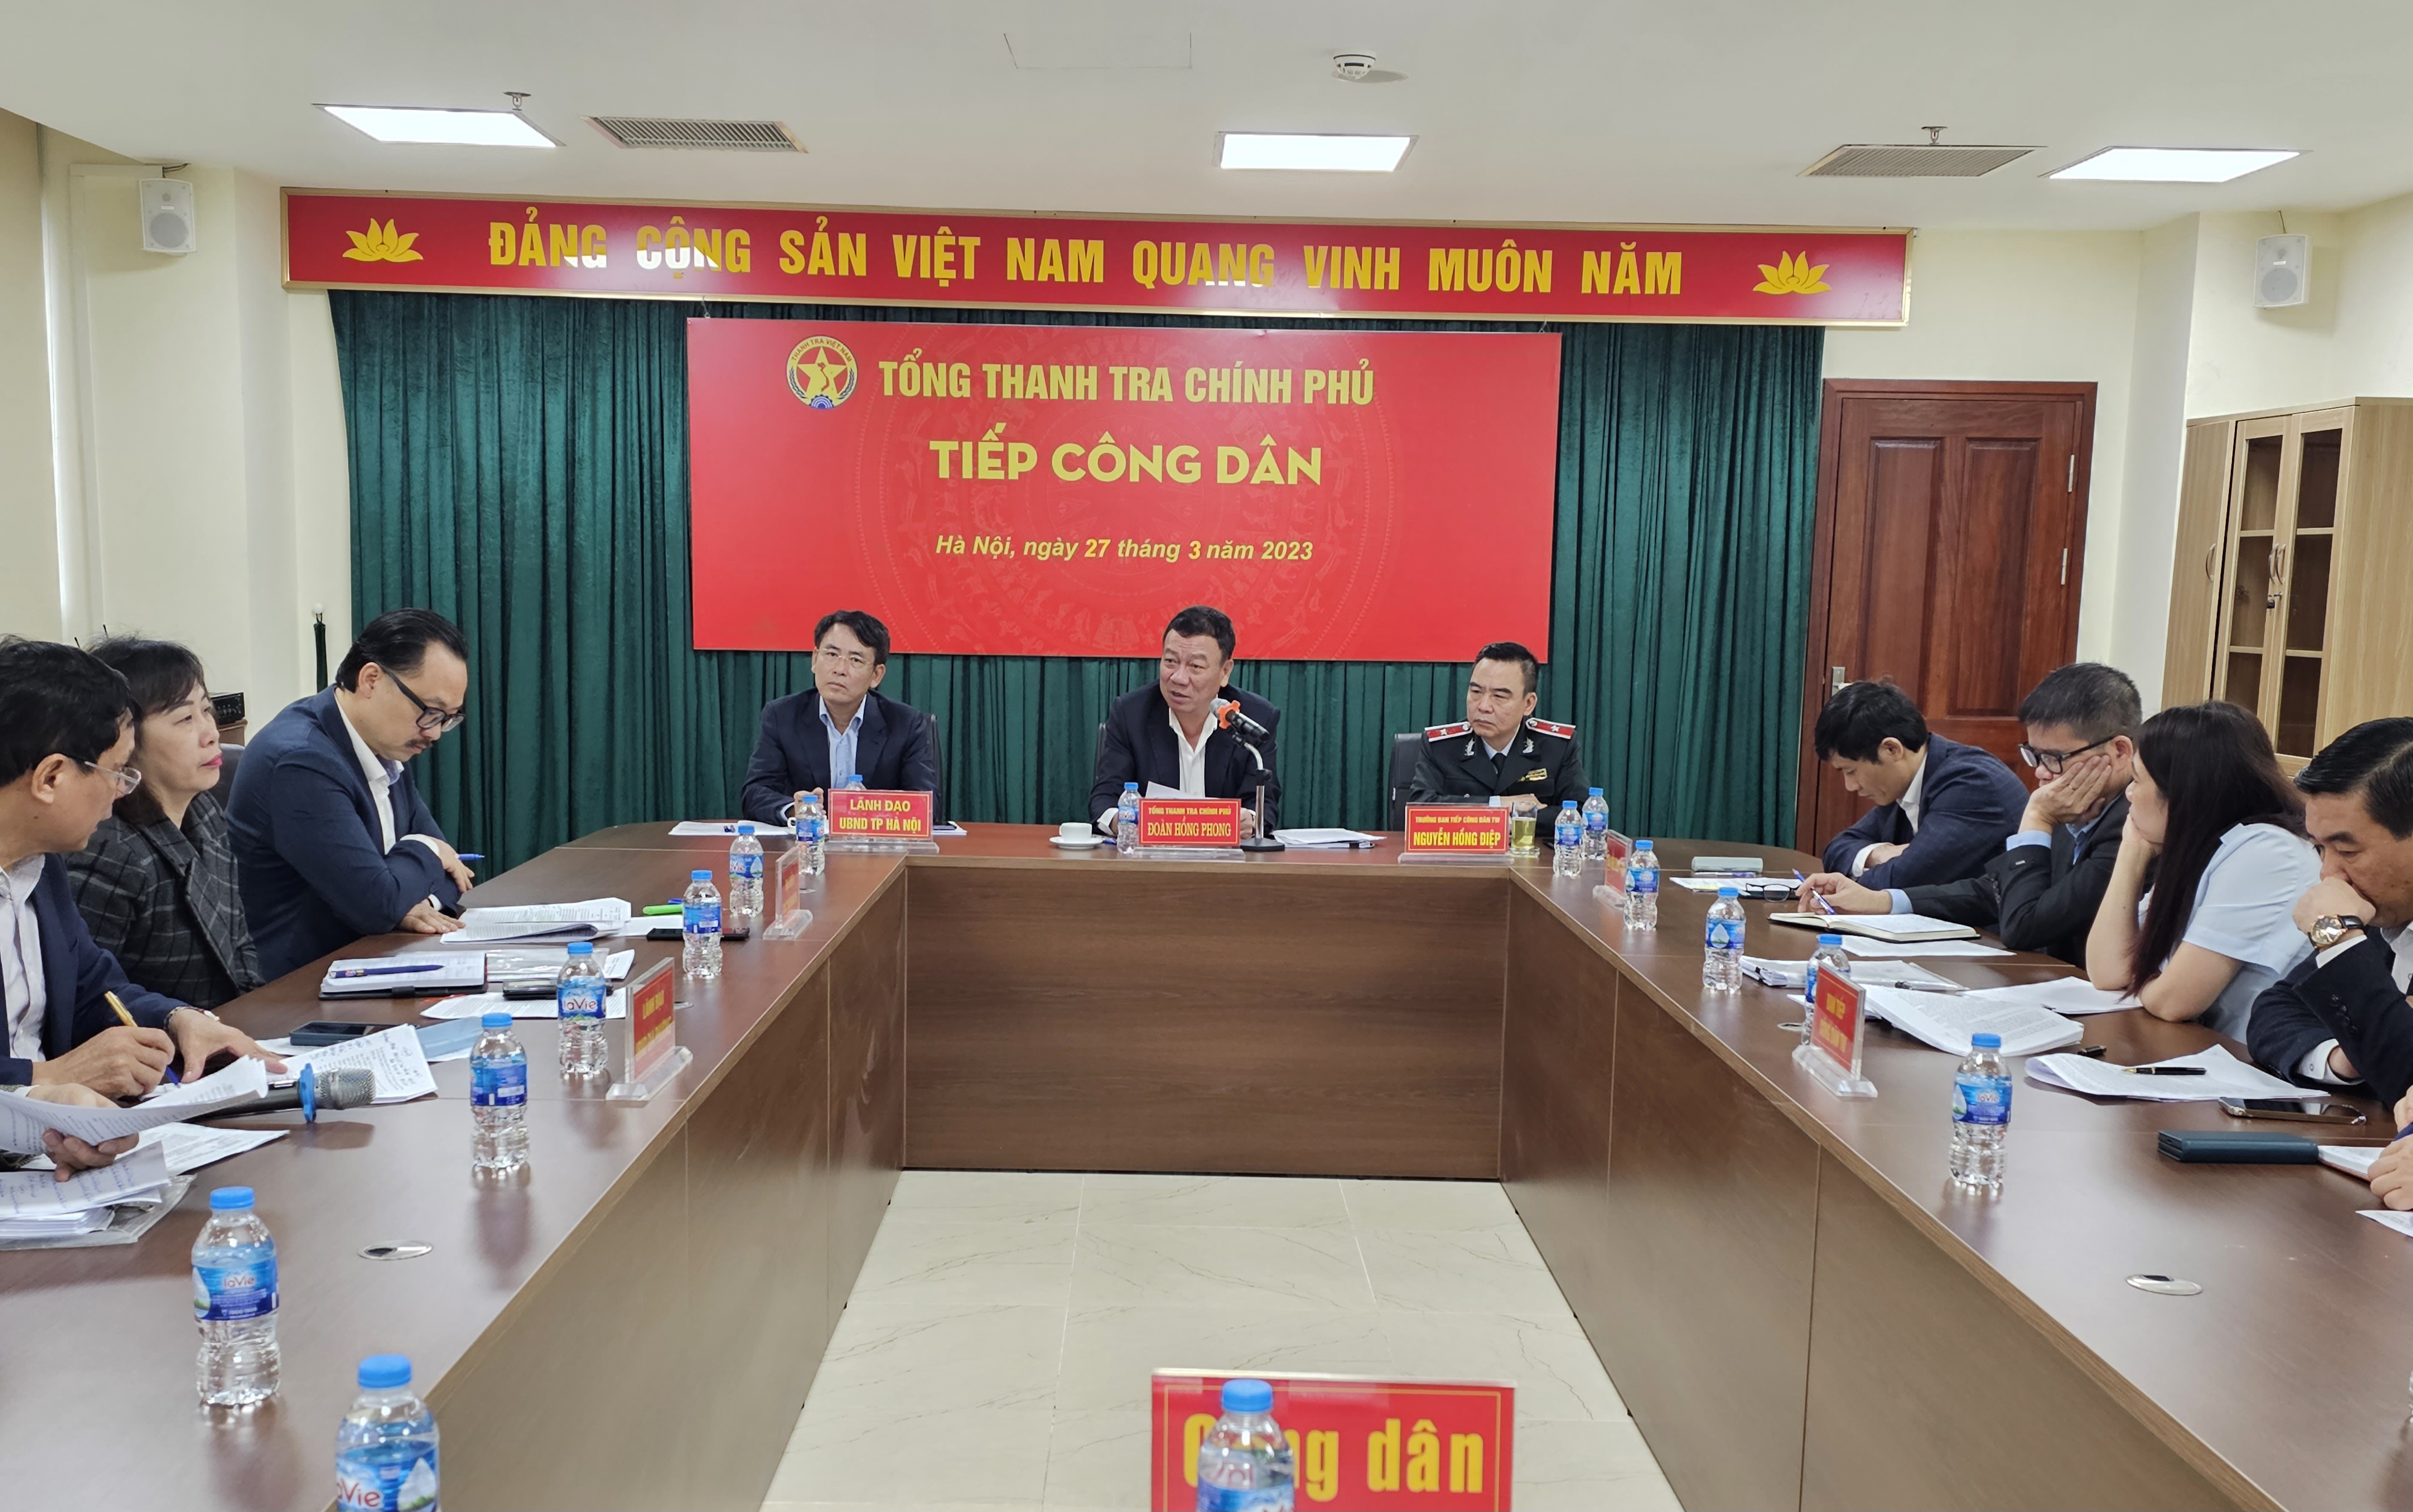 Tổng Thanh tra Chính phủ Đoàn Hồng Phong tiếp công dân định kỳ tháng 3